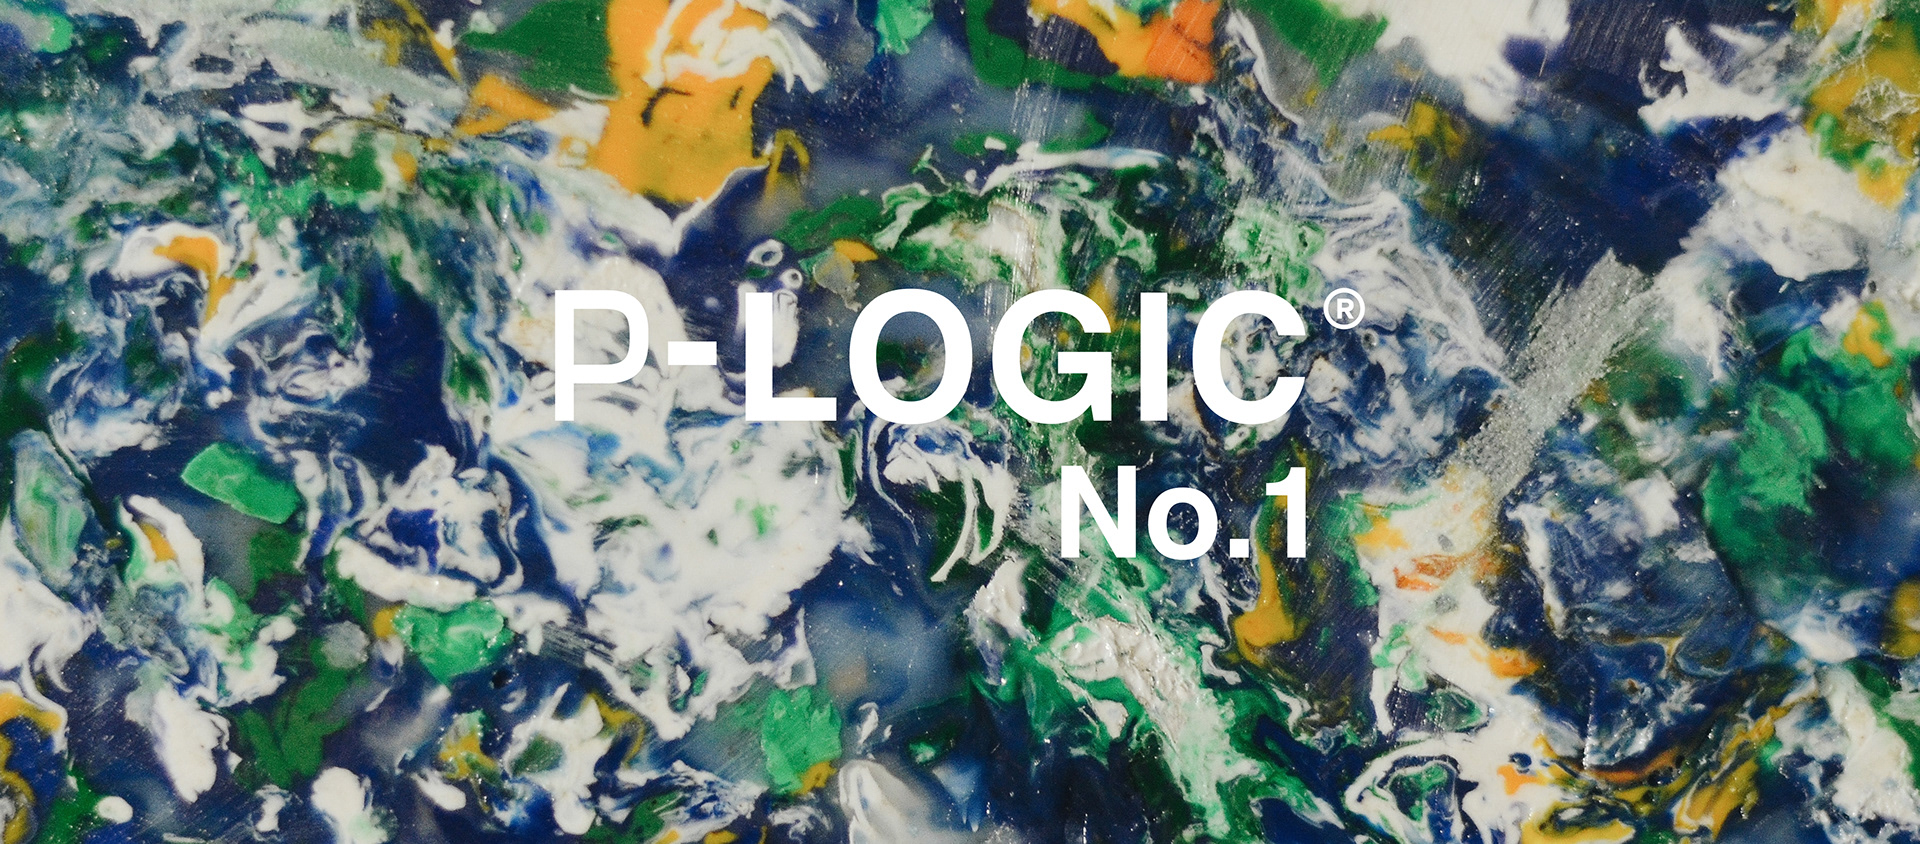 P-LOGIC CHAIR by Rubén Ortega Díaz - Creative Work